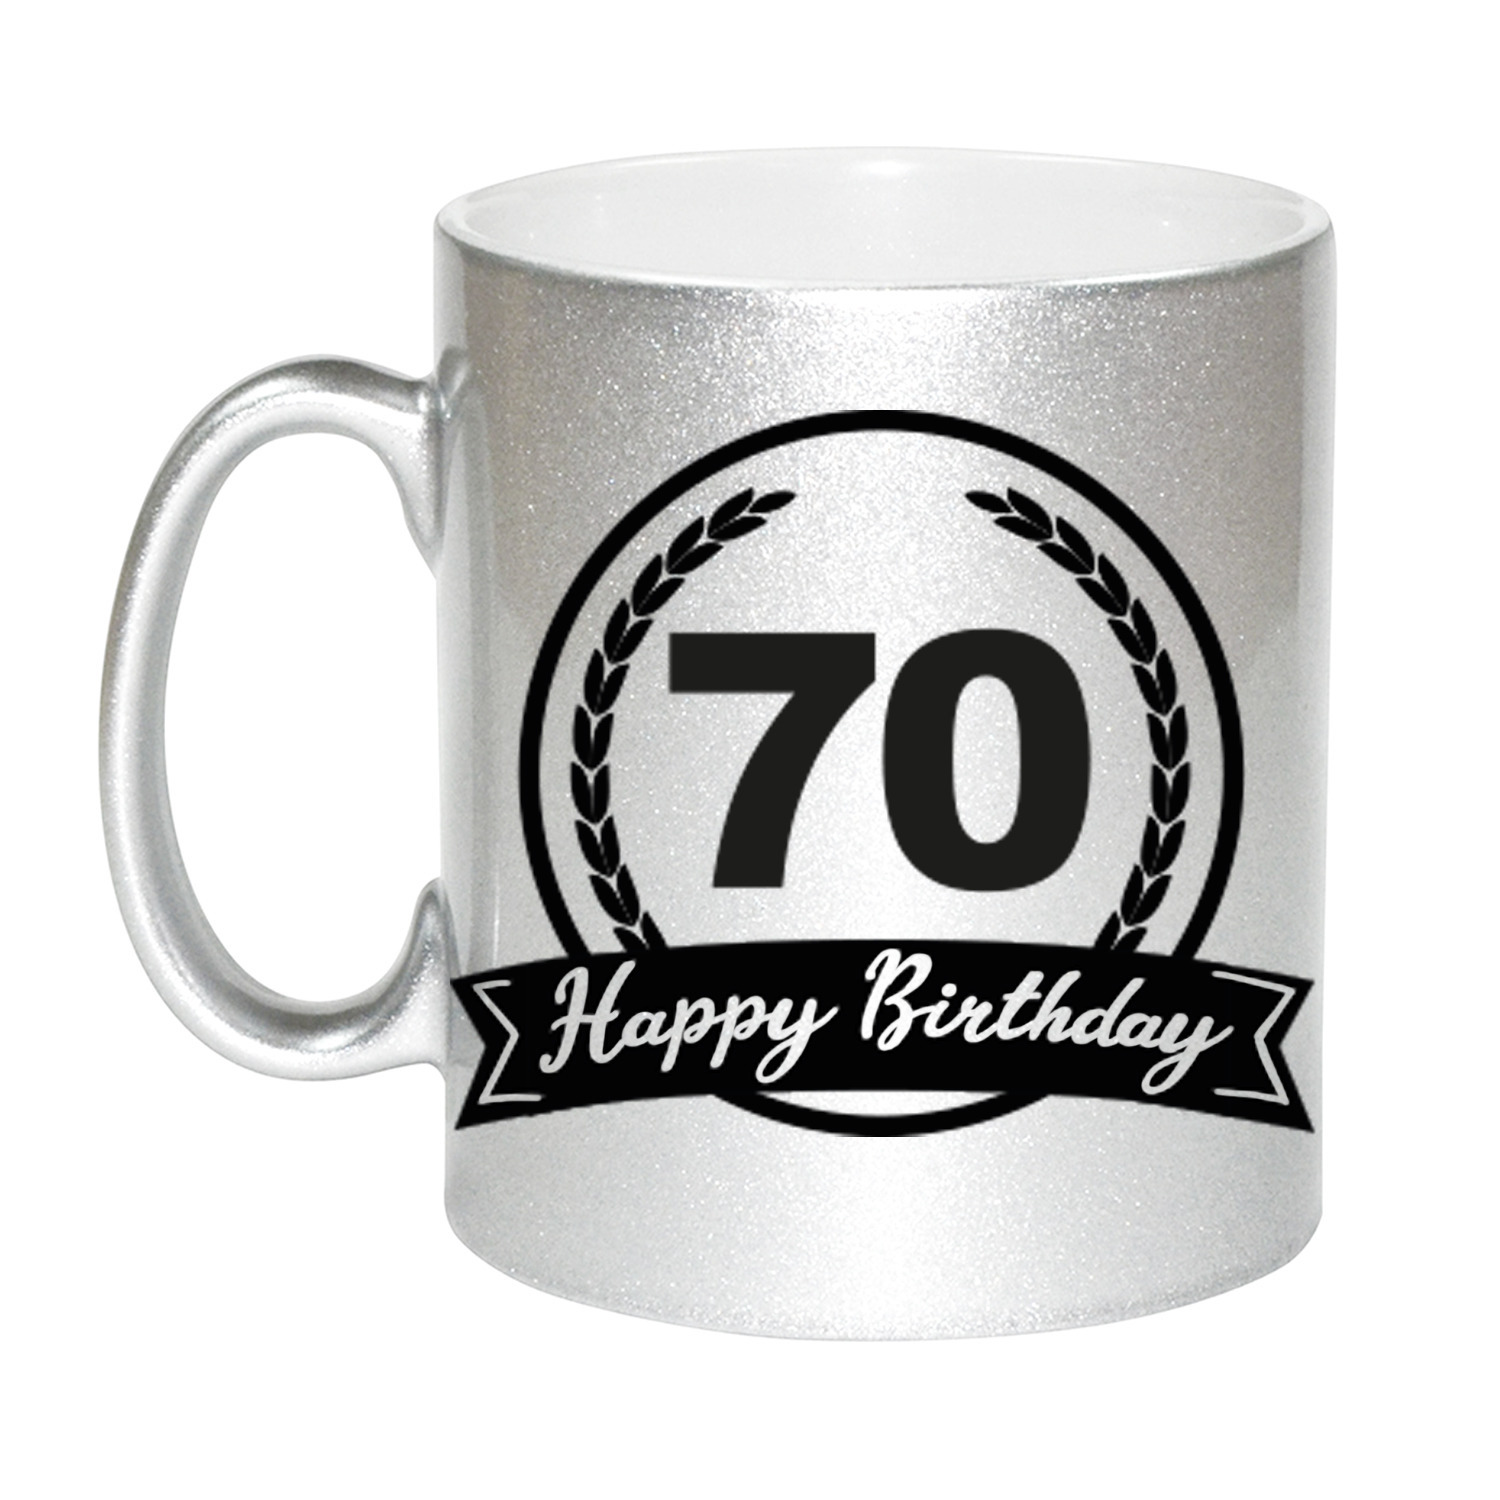 Happy Birthday 70 years zilveren cadeau mok / beker met wimpel 330 ml